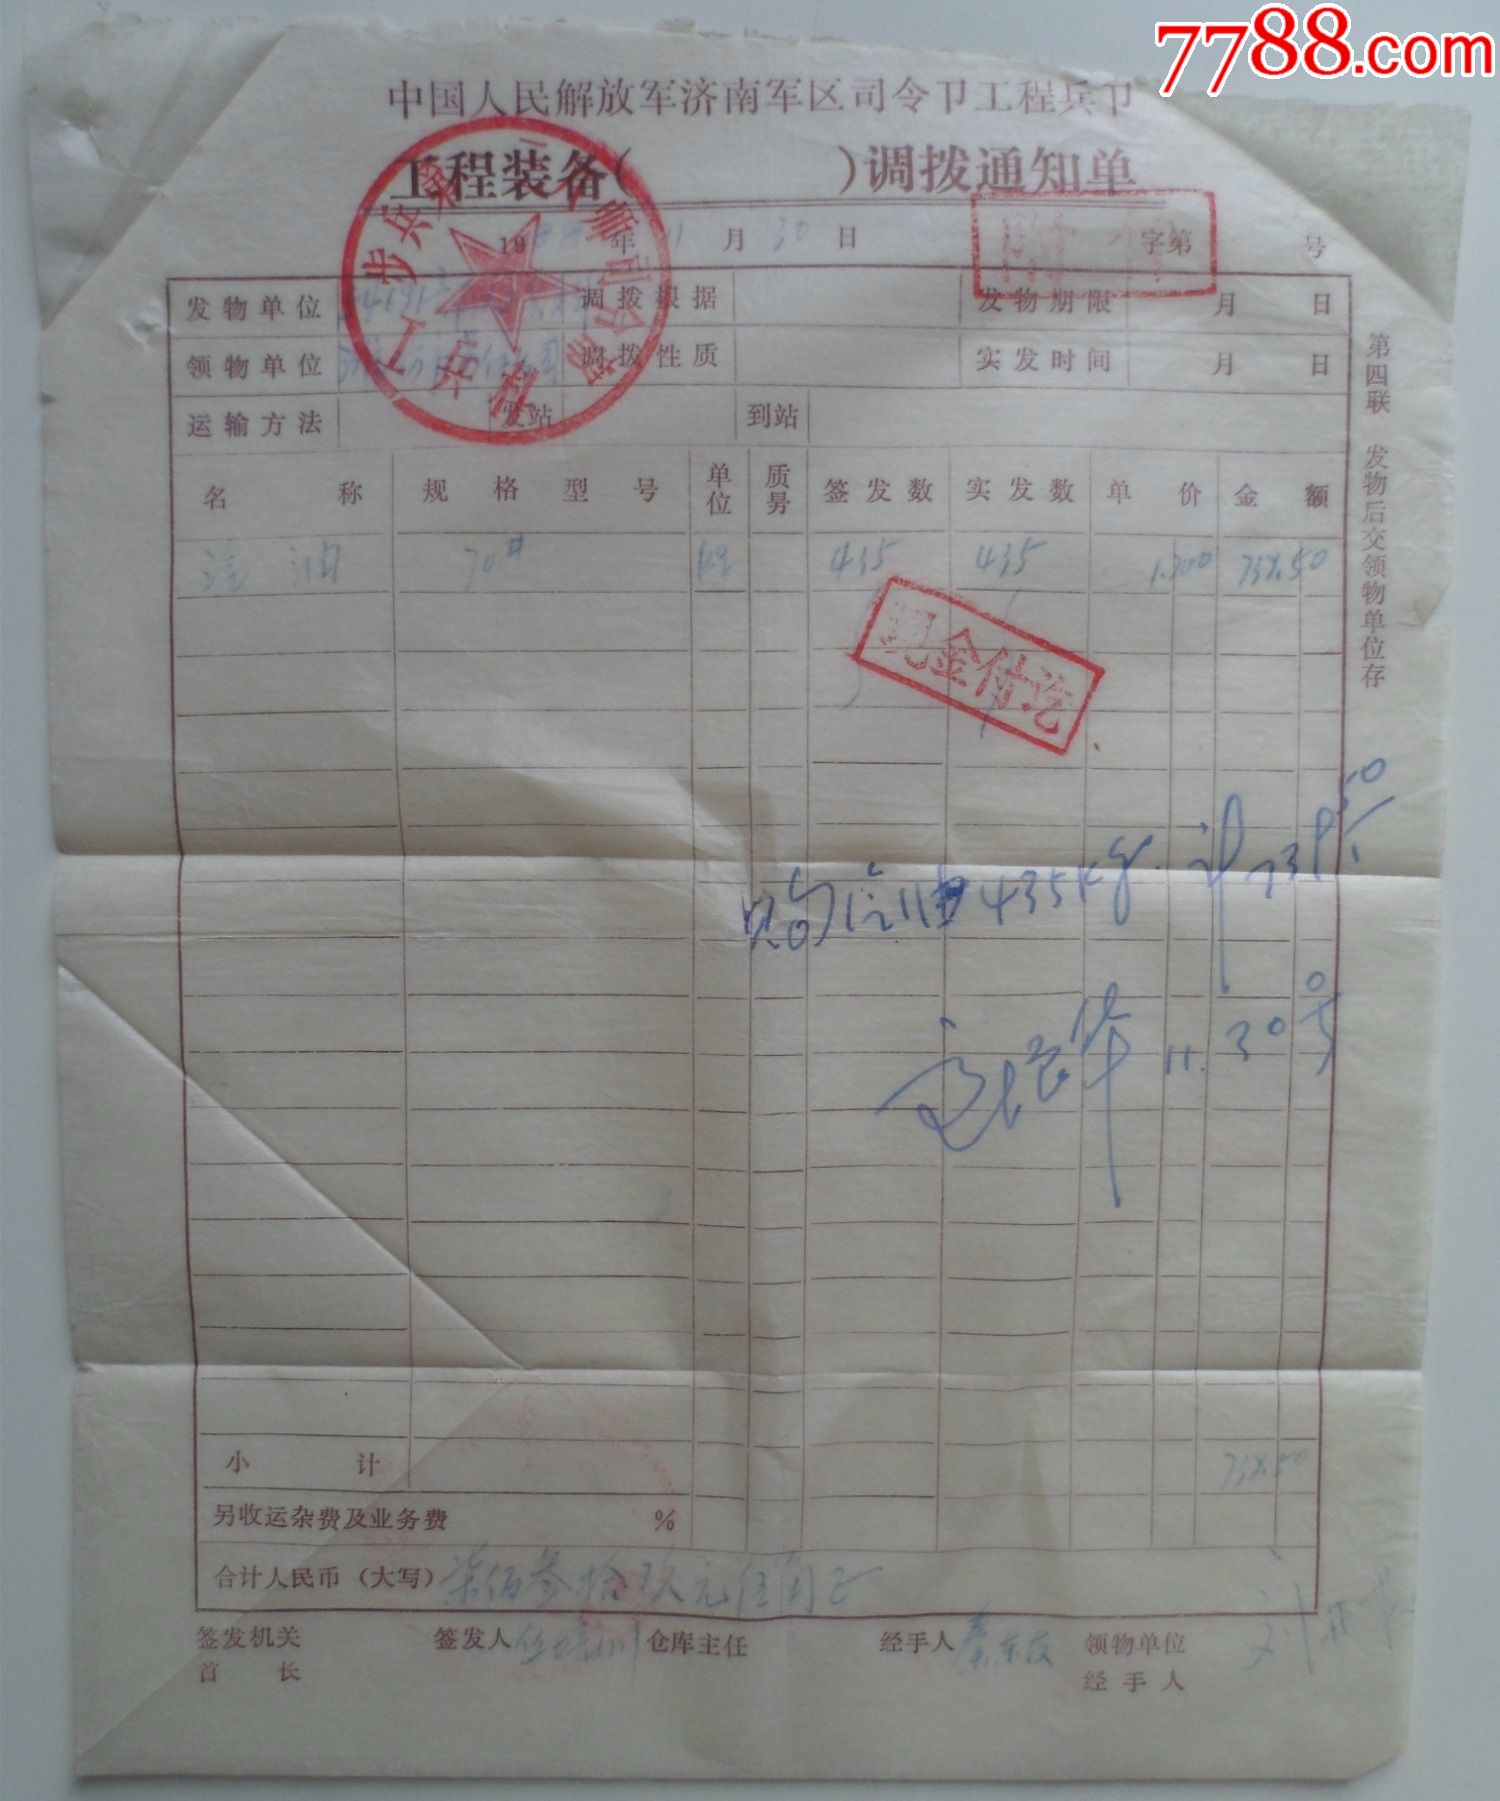 中国人民解放军济南区令部工程兵部工程装备调拨通知单